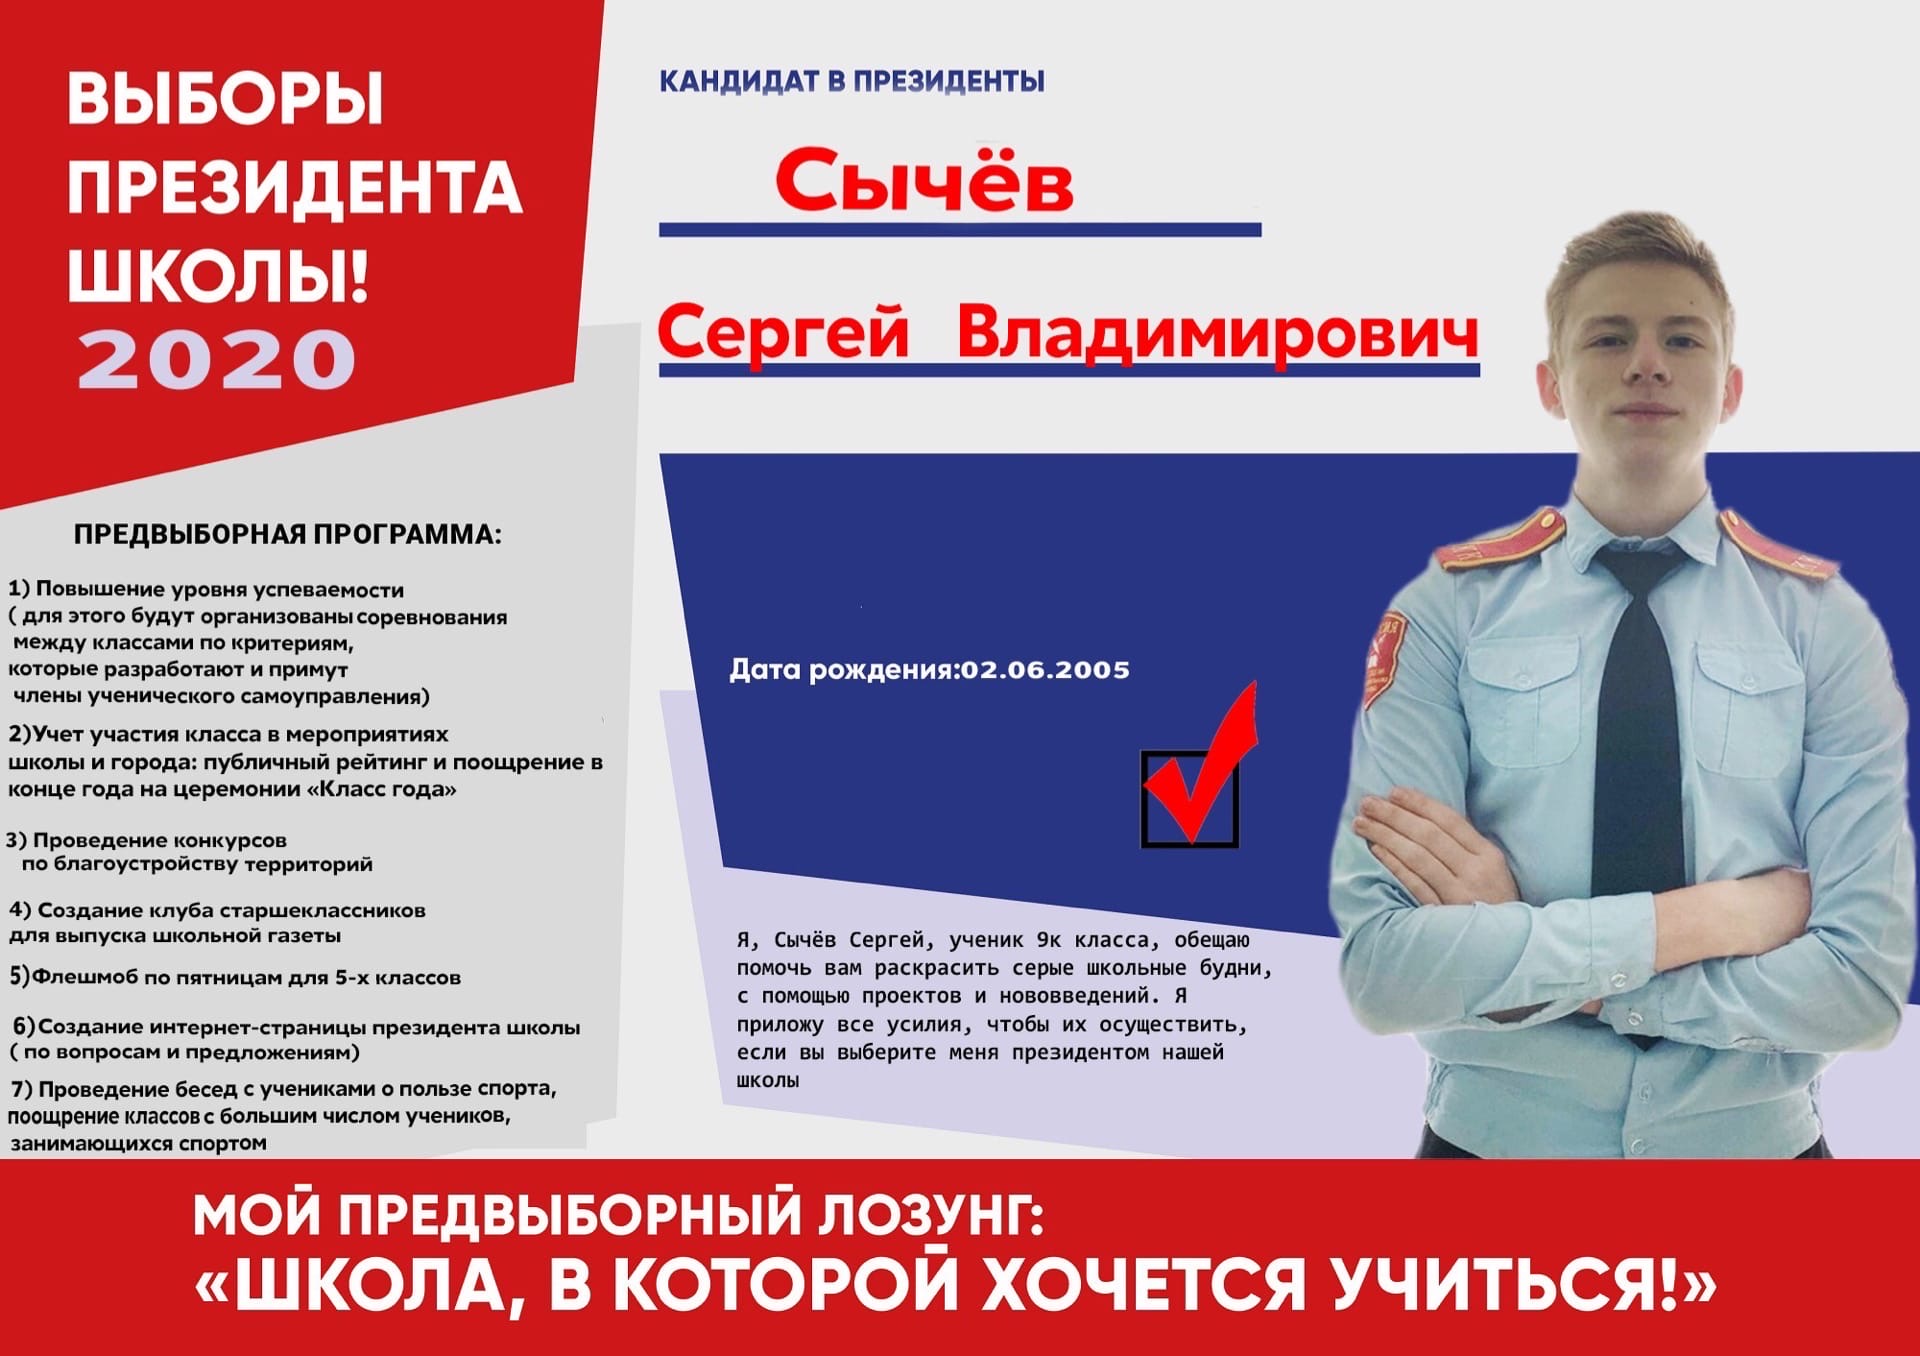 Выборы президента Шаолв